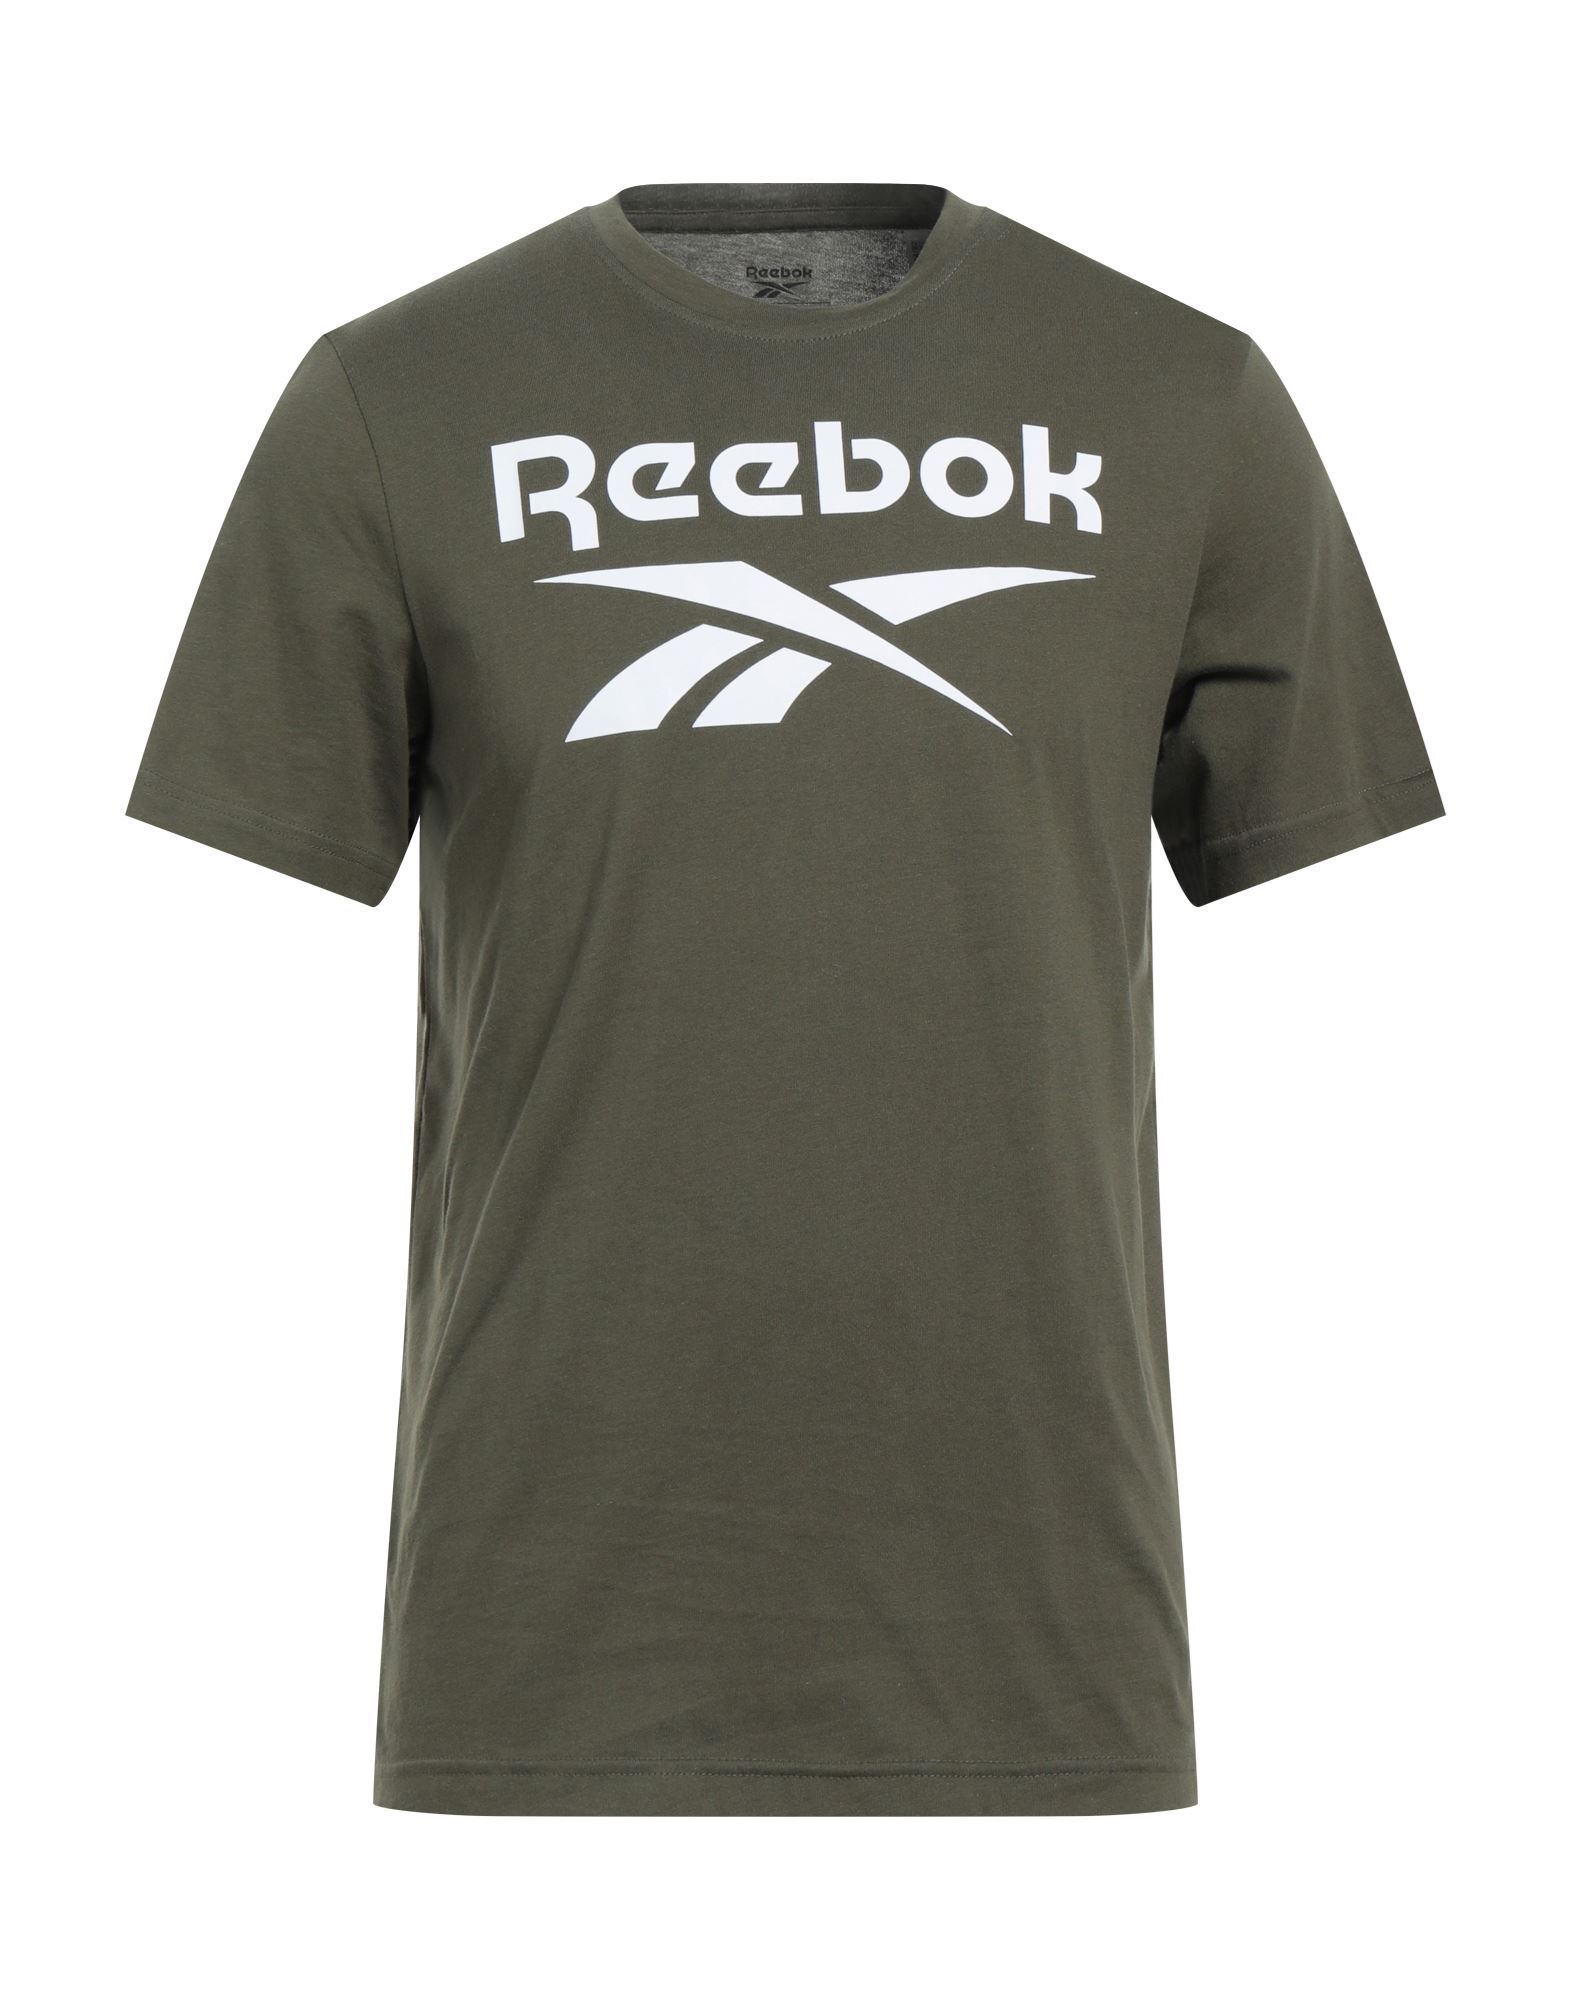 REEBOK T-shirts Herren Militärgrün von REEBOK